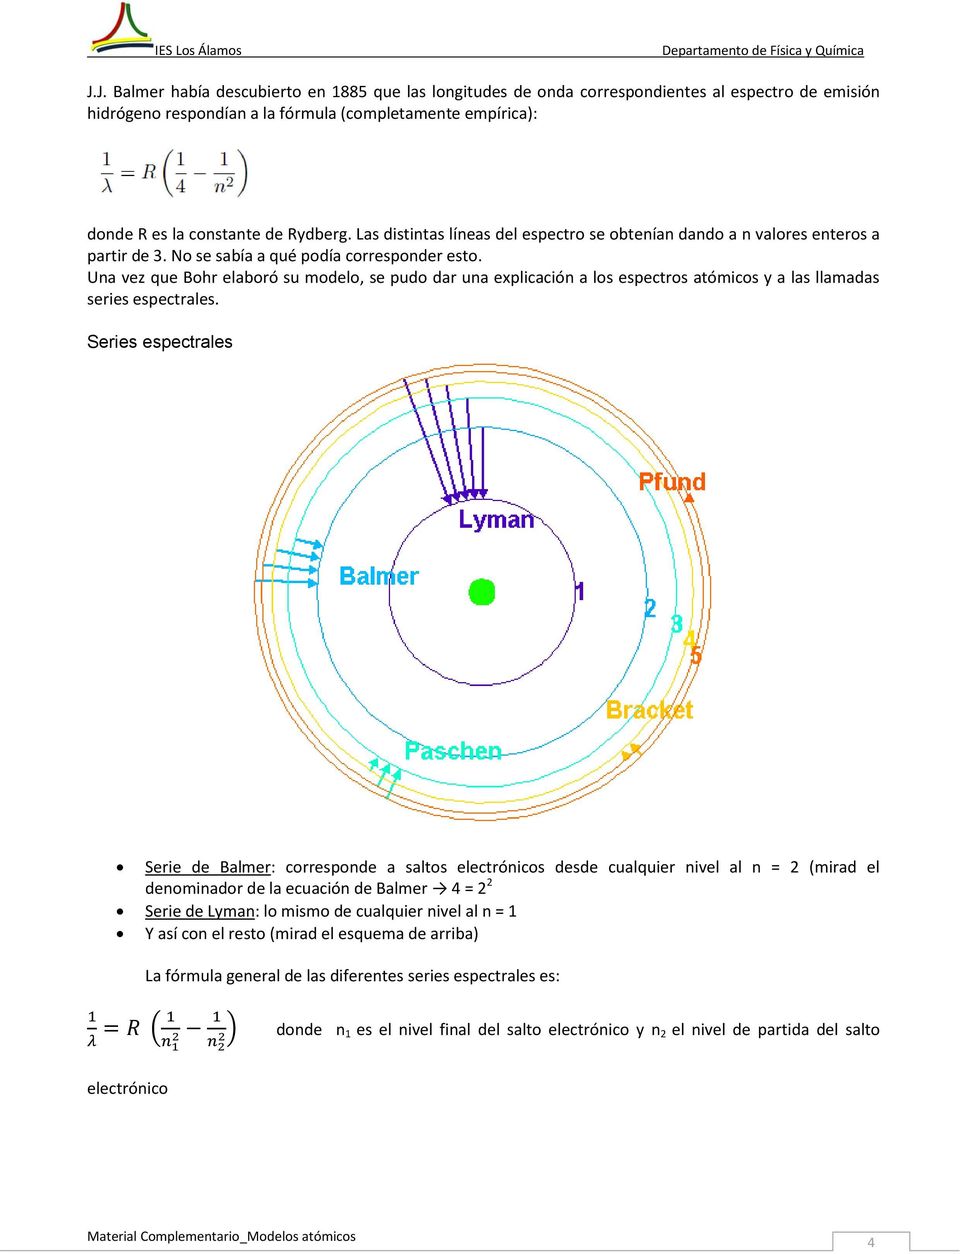 Una vez que Bohr elaboró su modelo, se pudo dar una explicación a los espectros atómicos y a las llamadas series espectrales.